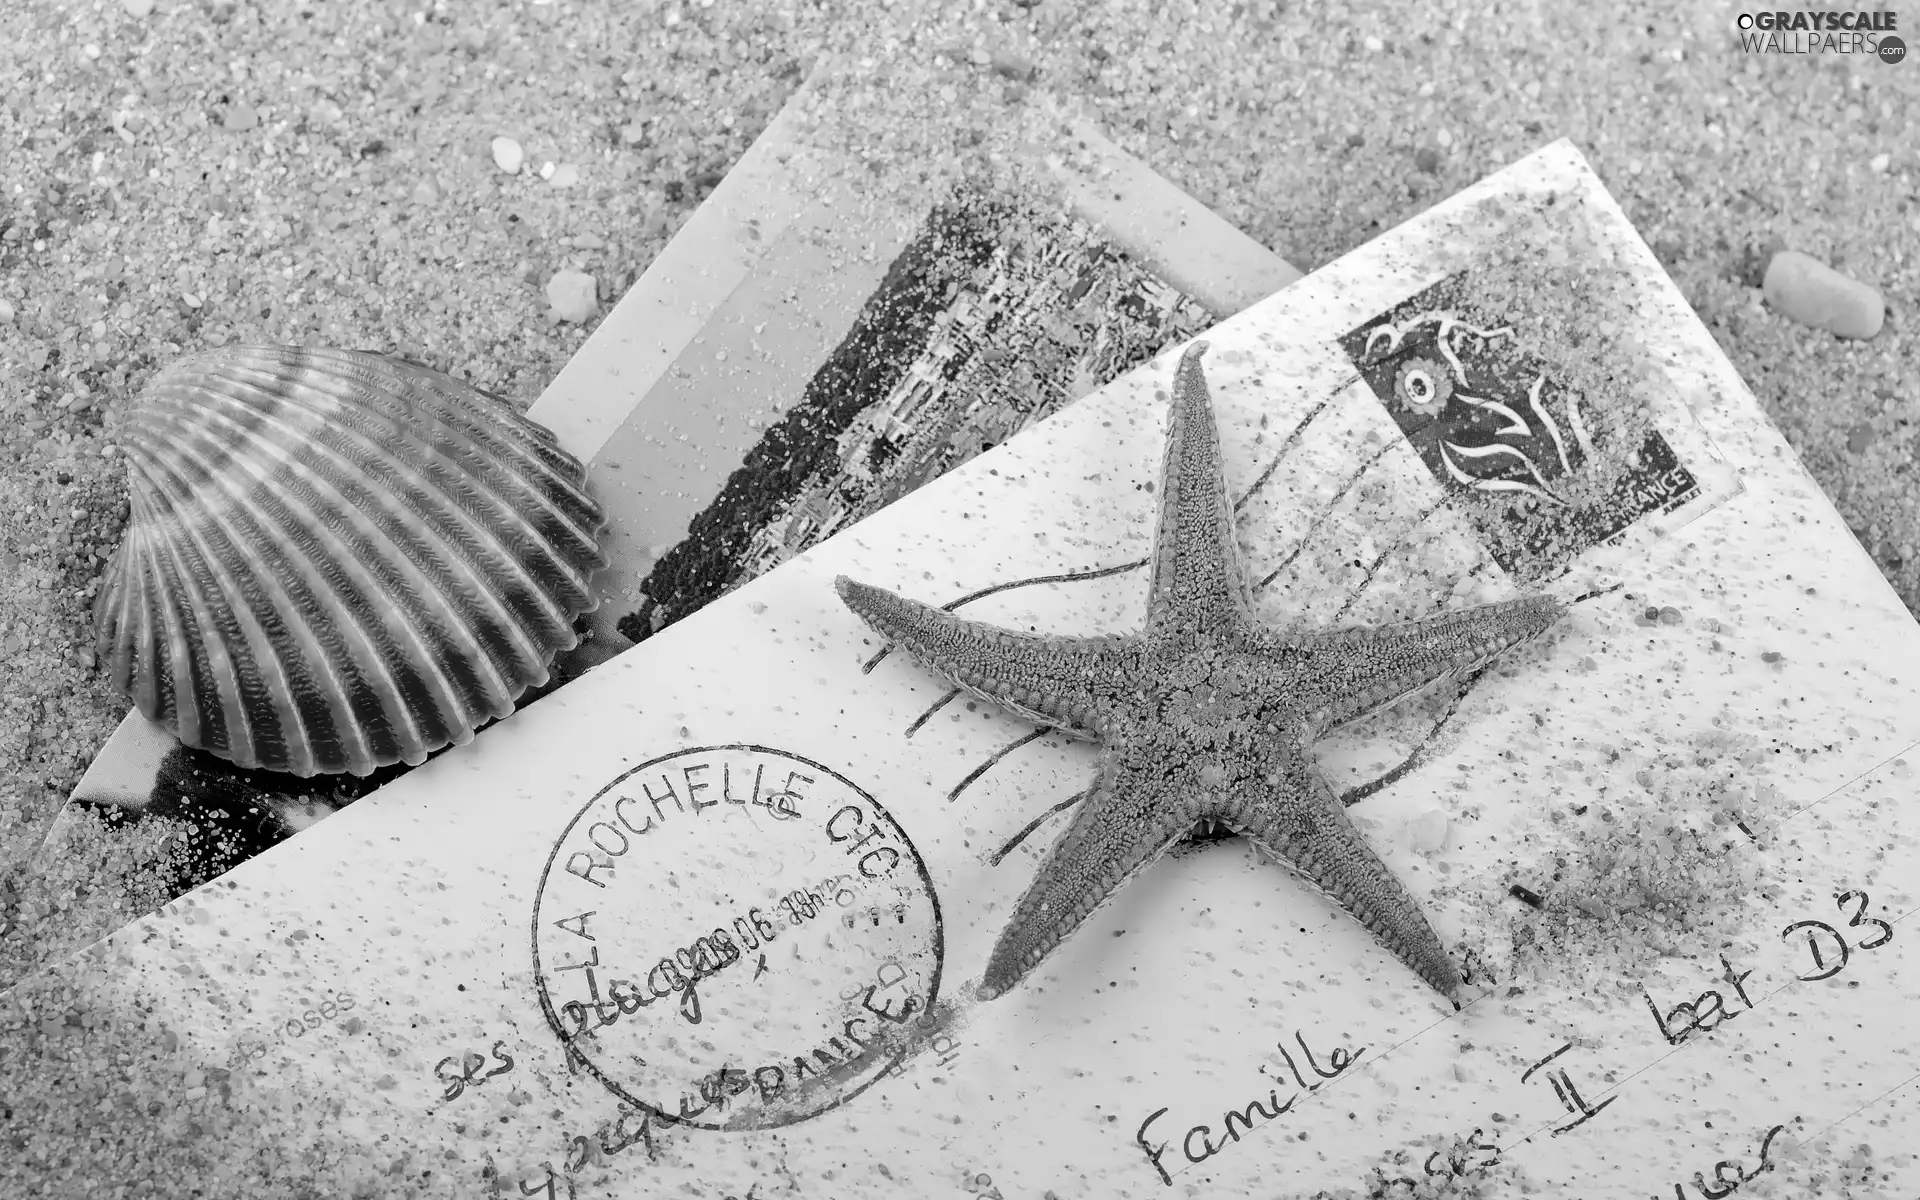 Postcards, starfish, Sand, shell